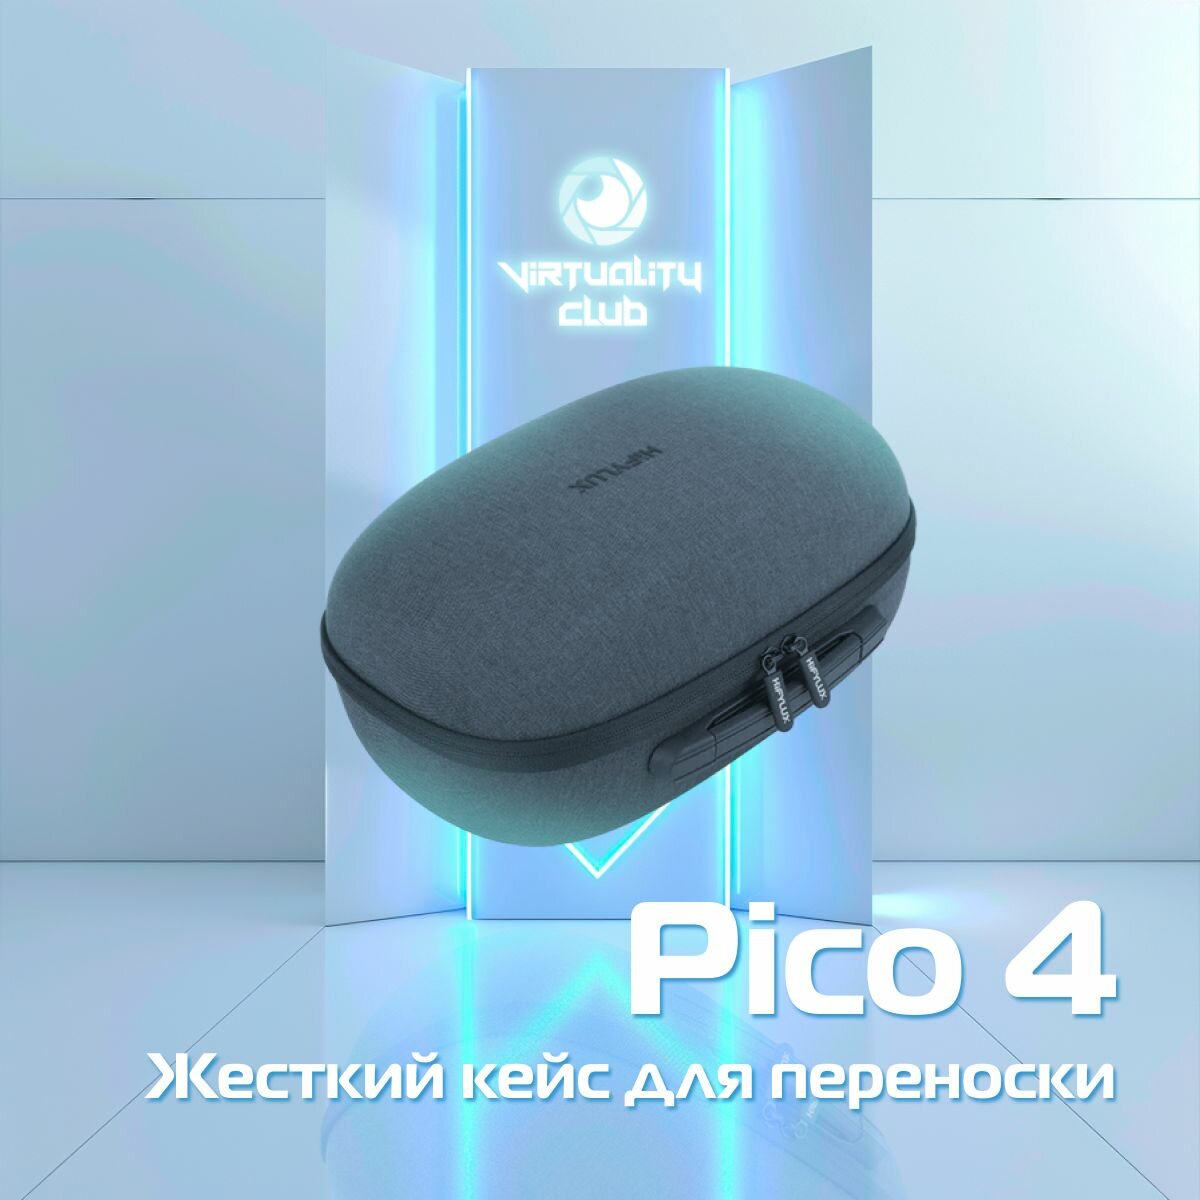 Жёсткий кейс для переноски VR шлема Pico 4